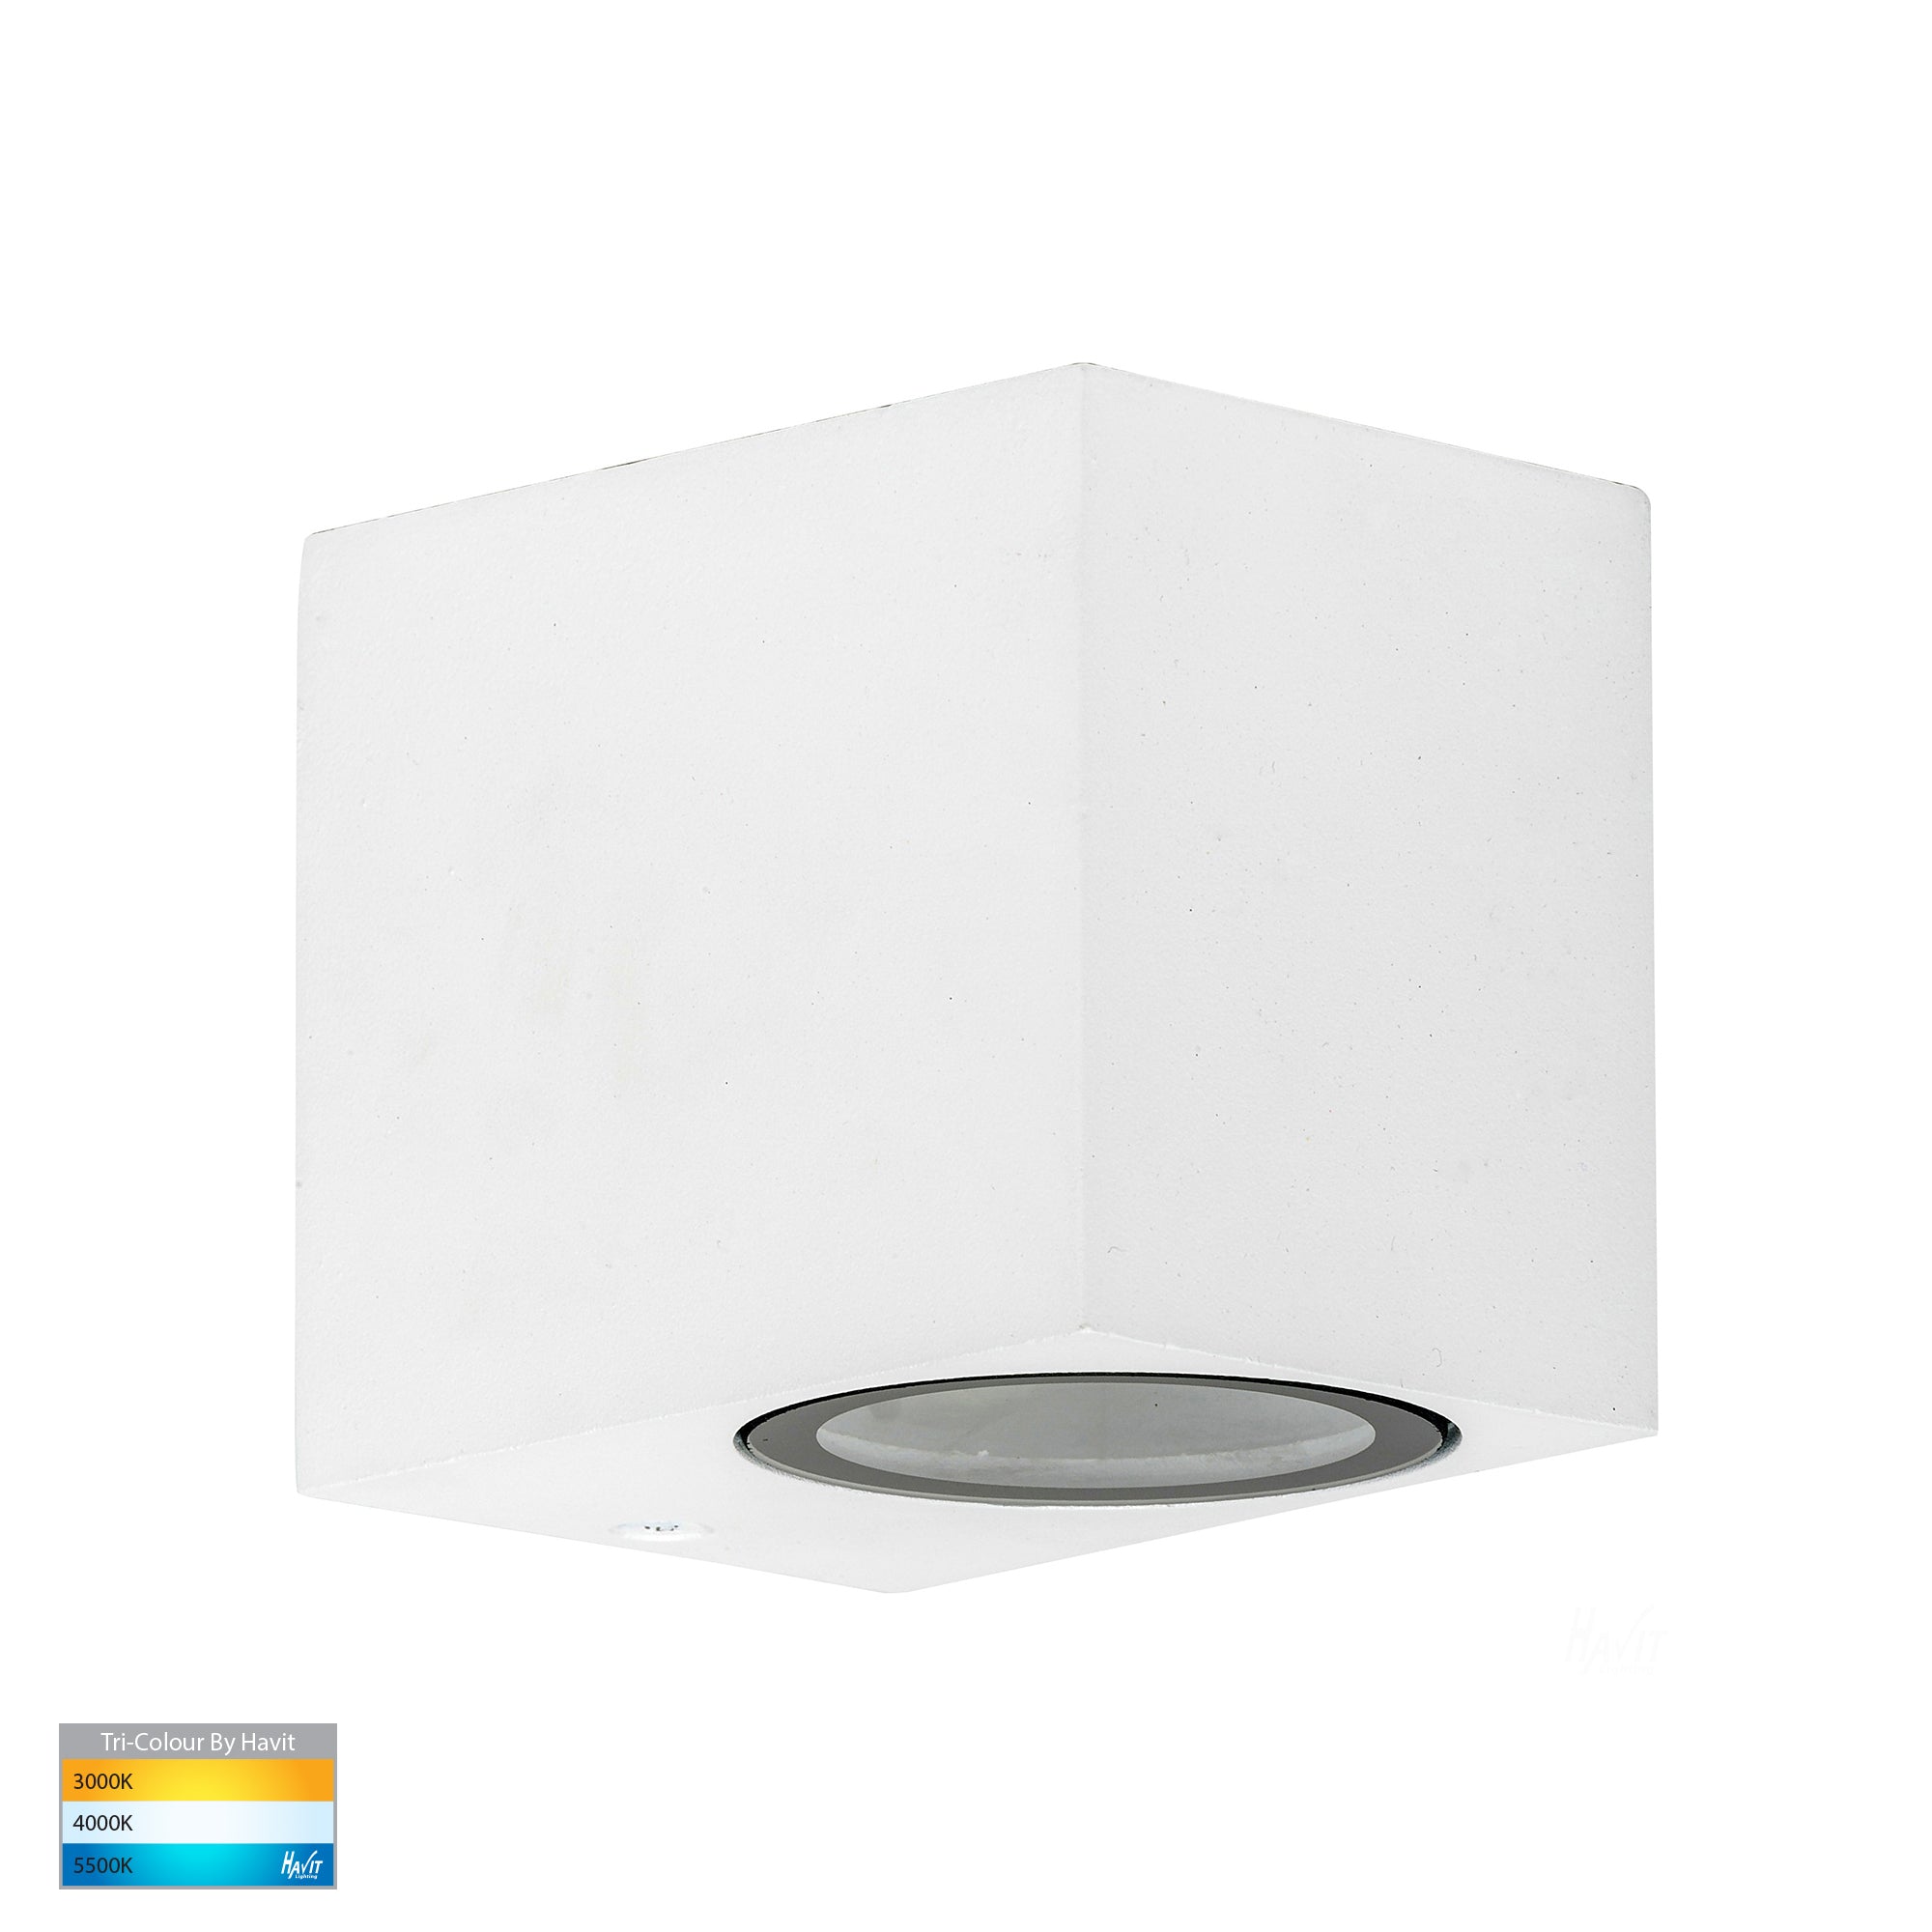 White – Accord Havit Lighting Light HV3631T-WHT - Fixed TRI LED Down Wall Colour